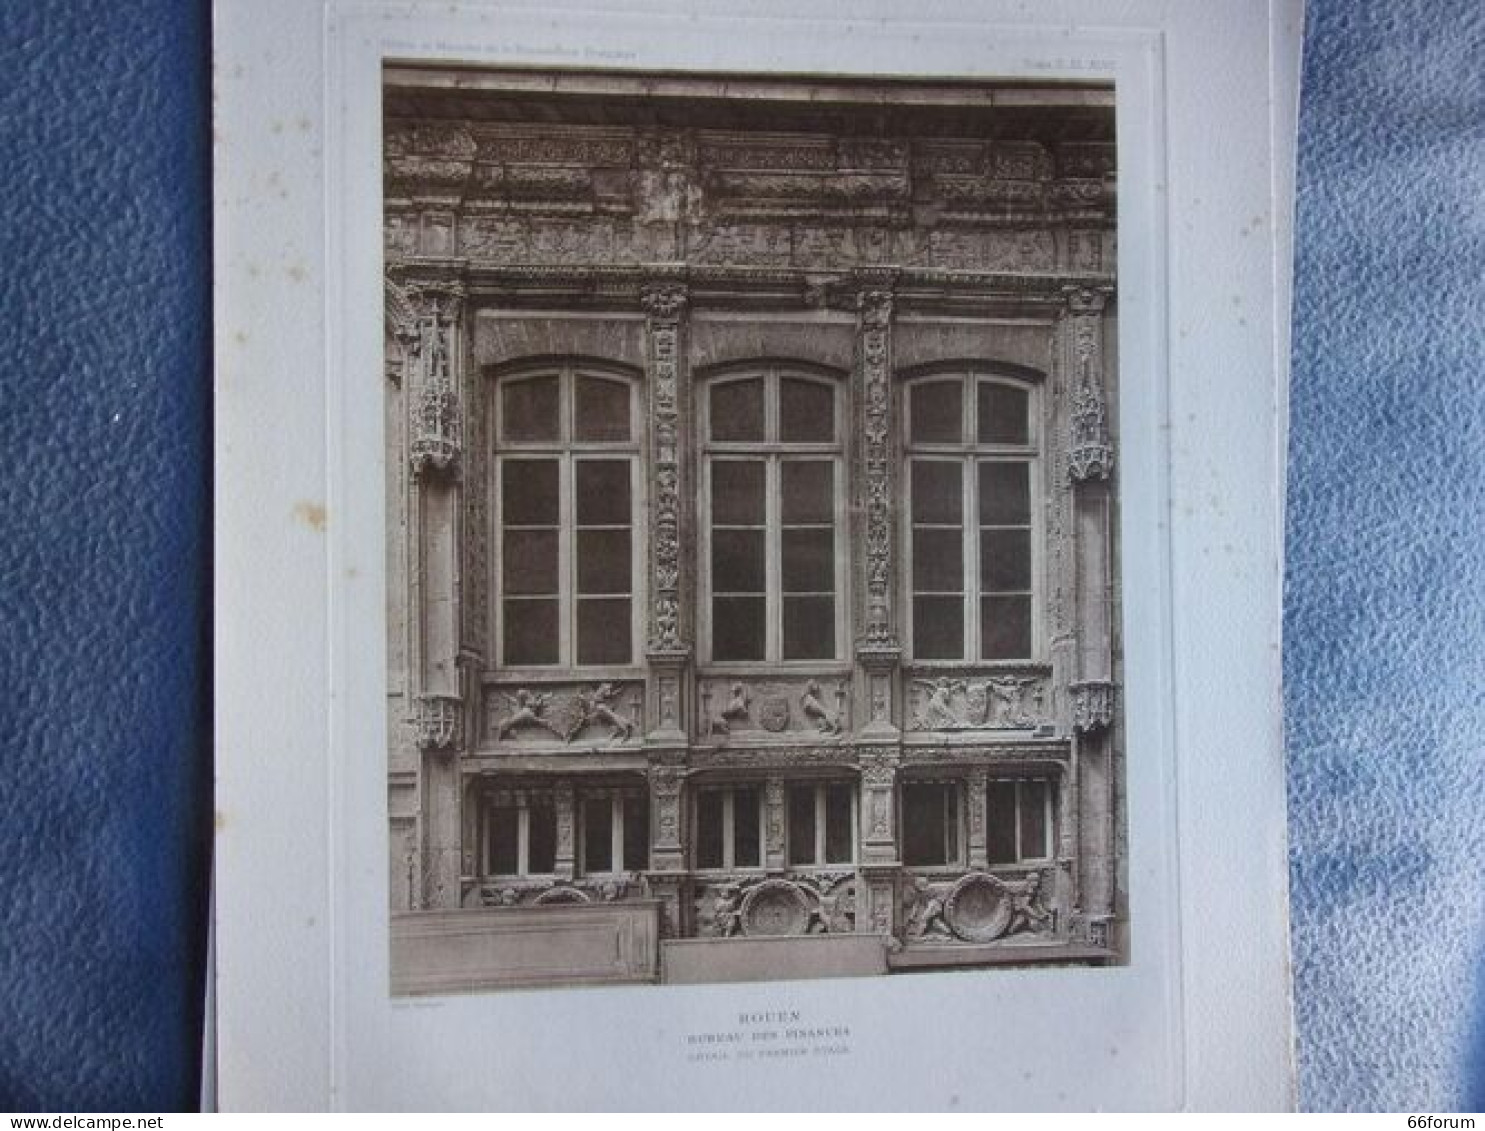 Planche 1910 ROUEN BUREAU DES FINANCES DETAIL DU PERMIER ETAGE HOTELS ET MAISONS XV ET XVIème Siècle - Art